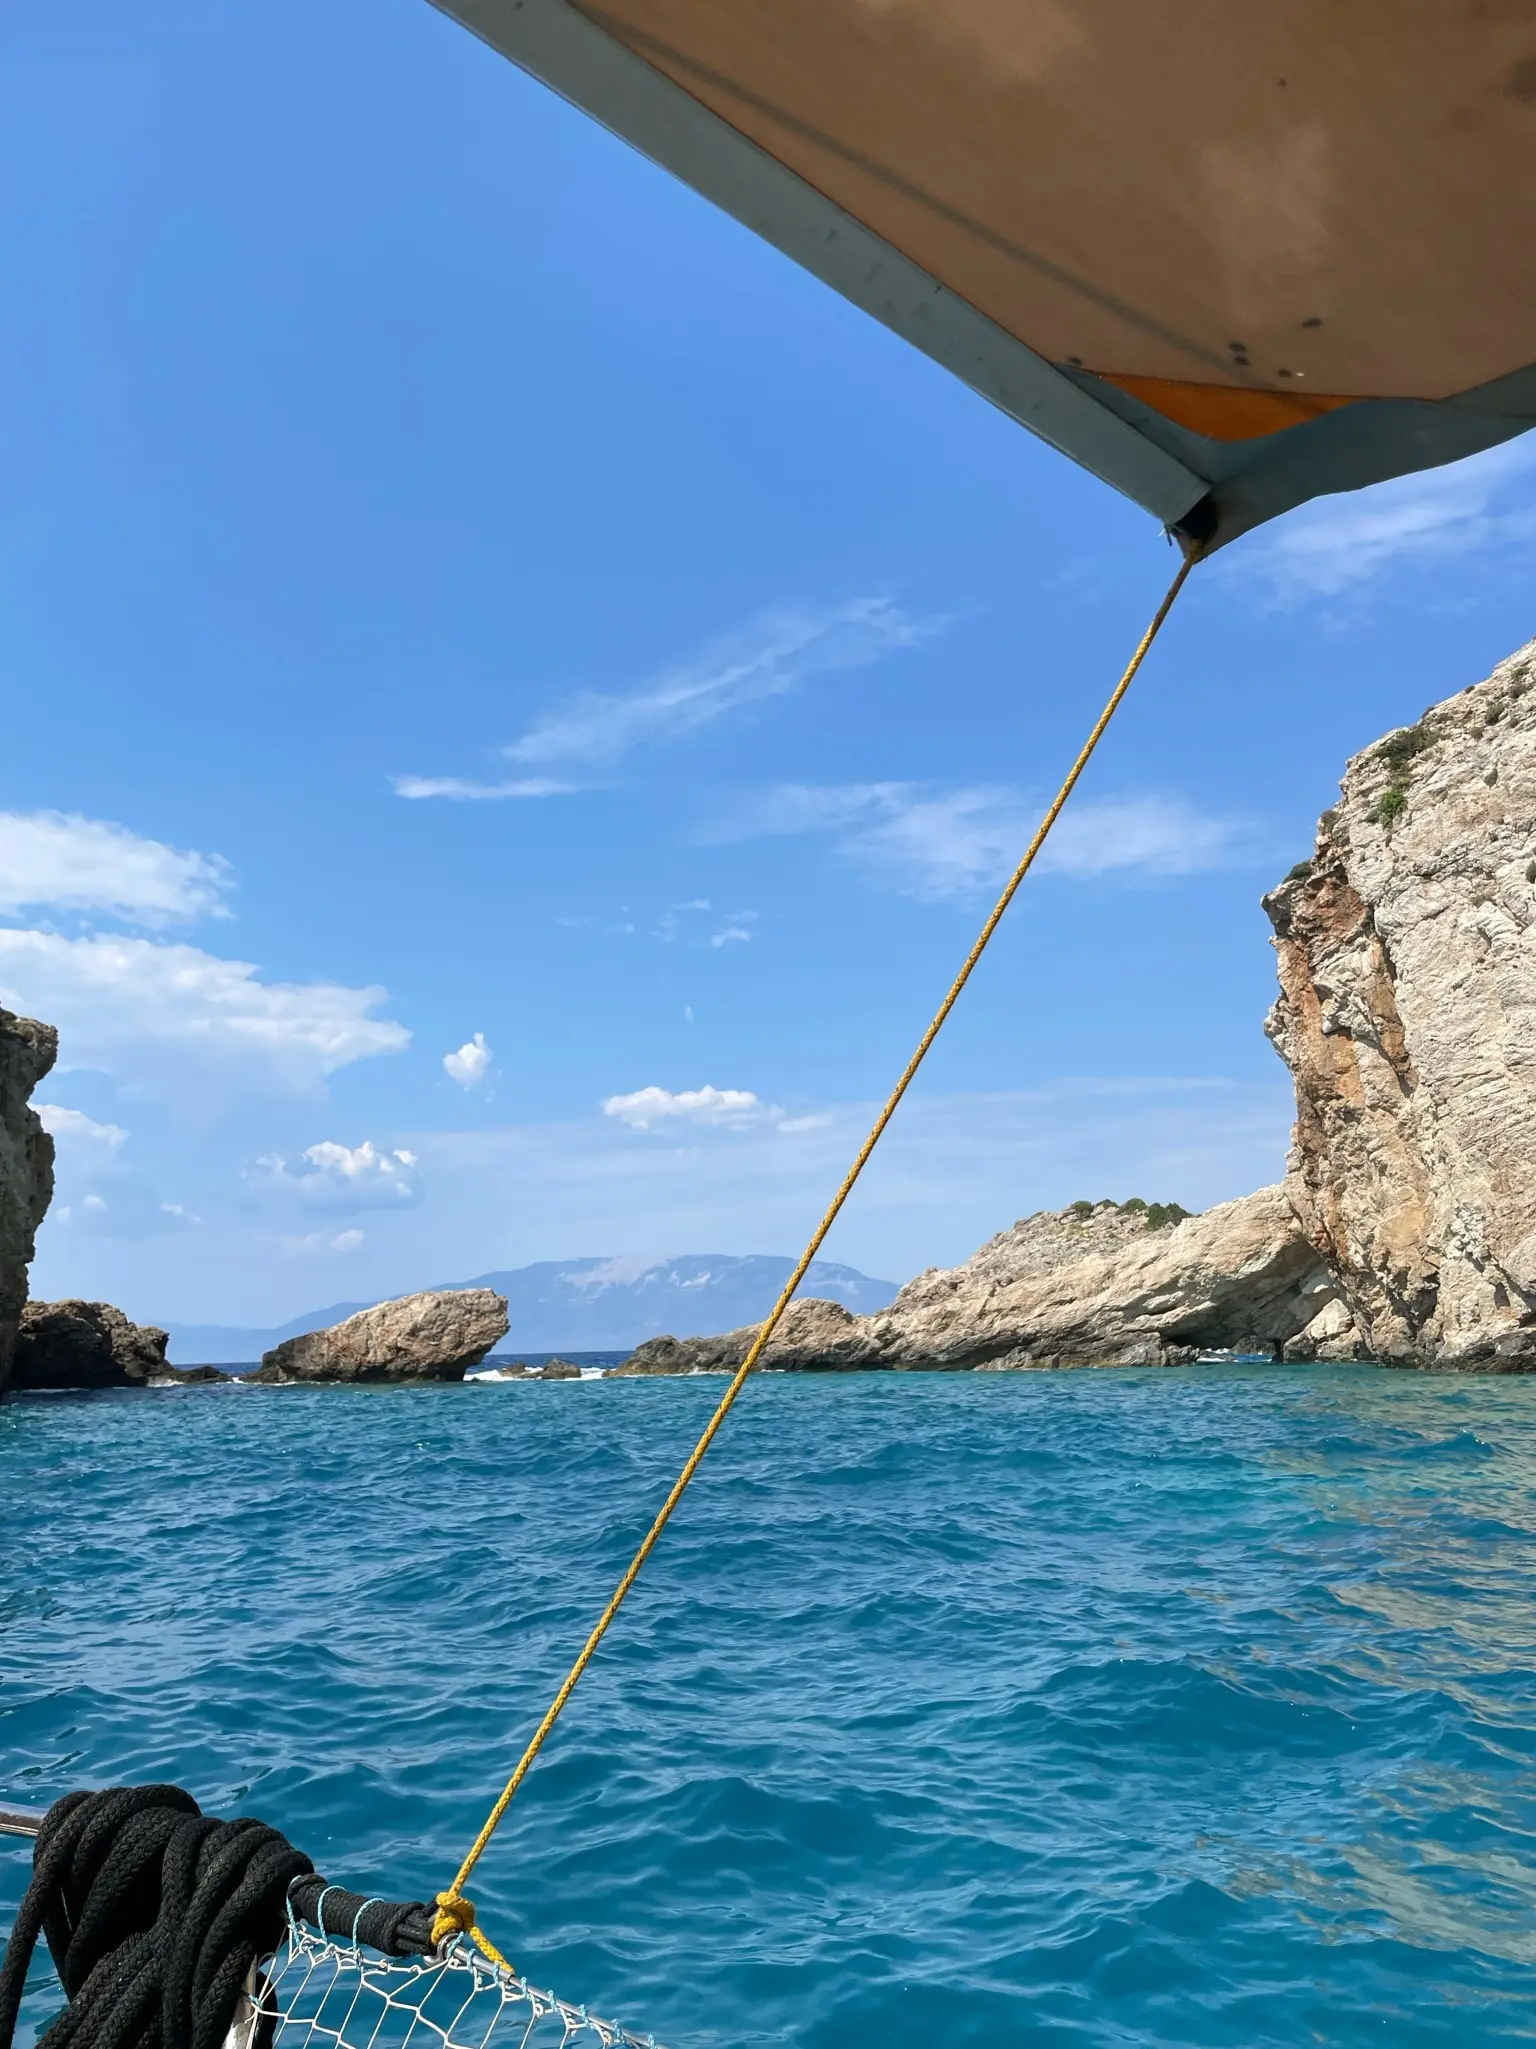 Sailing Ionian sea